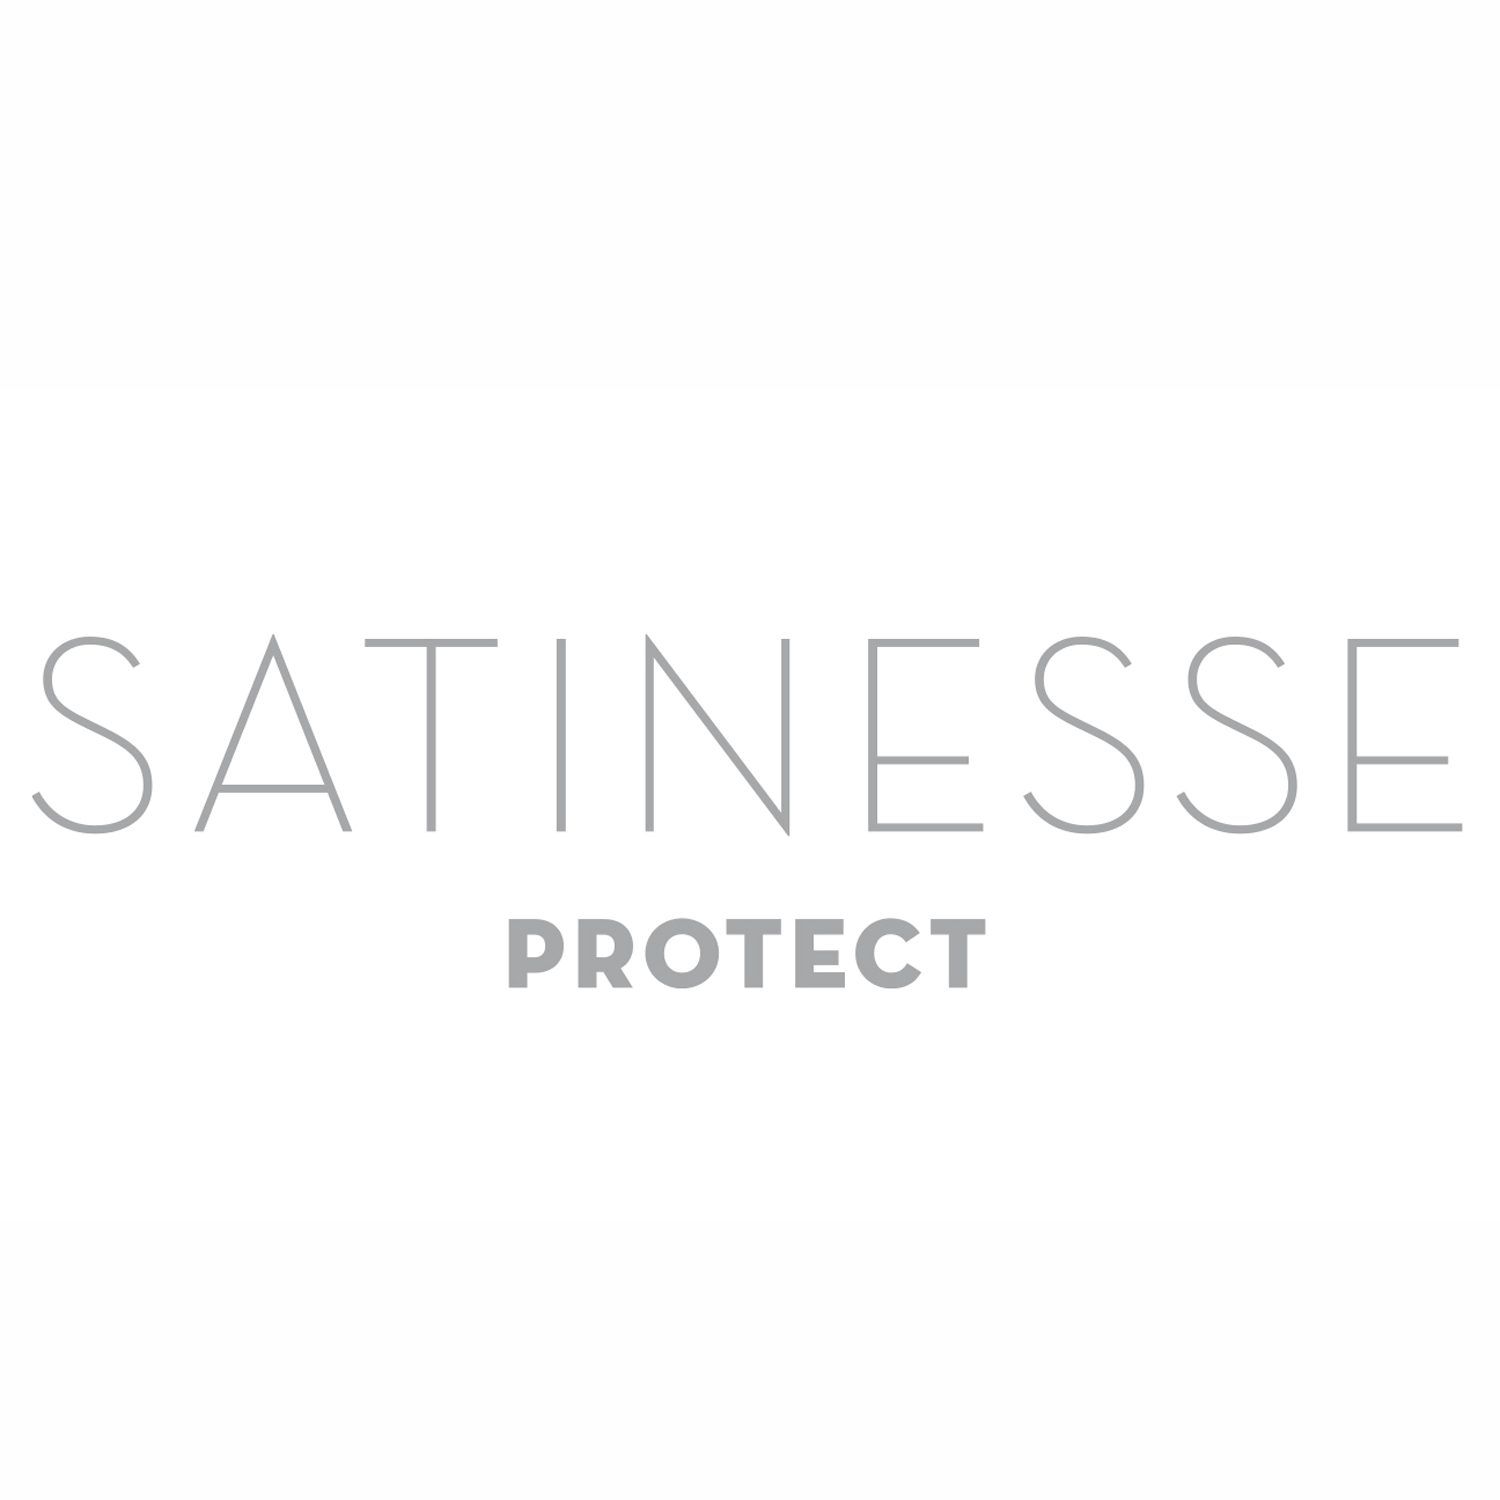 FORMESSE Matratzenschoner Satinesse Protect weiß 100x200cm